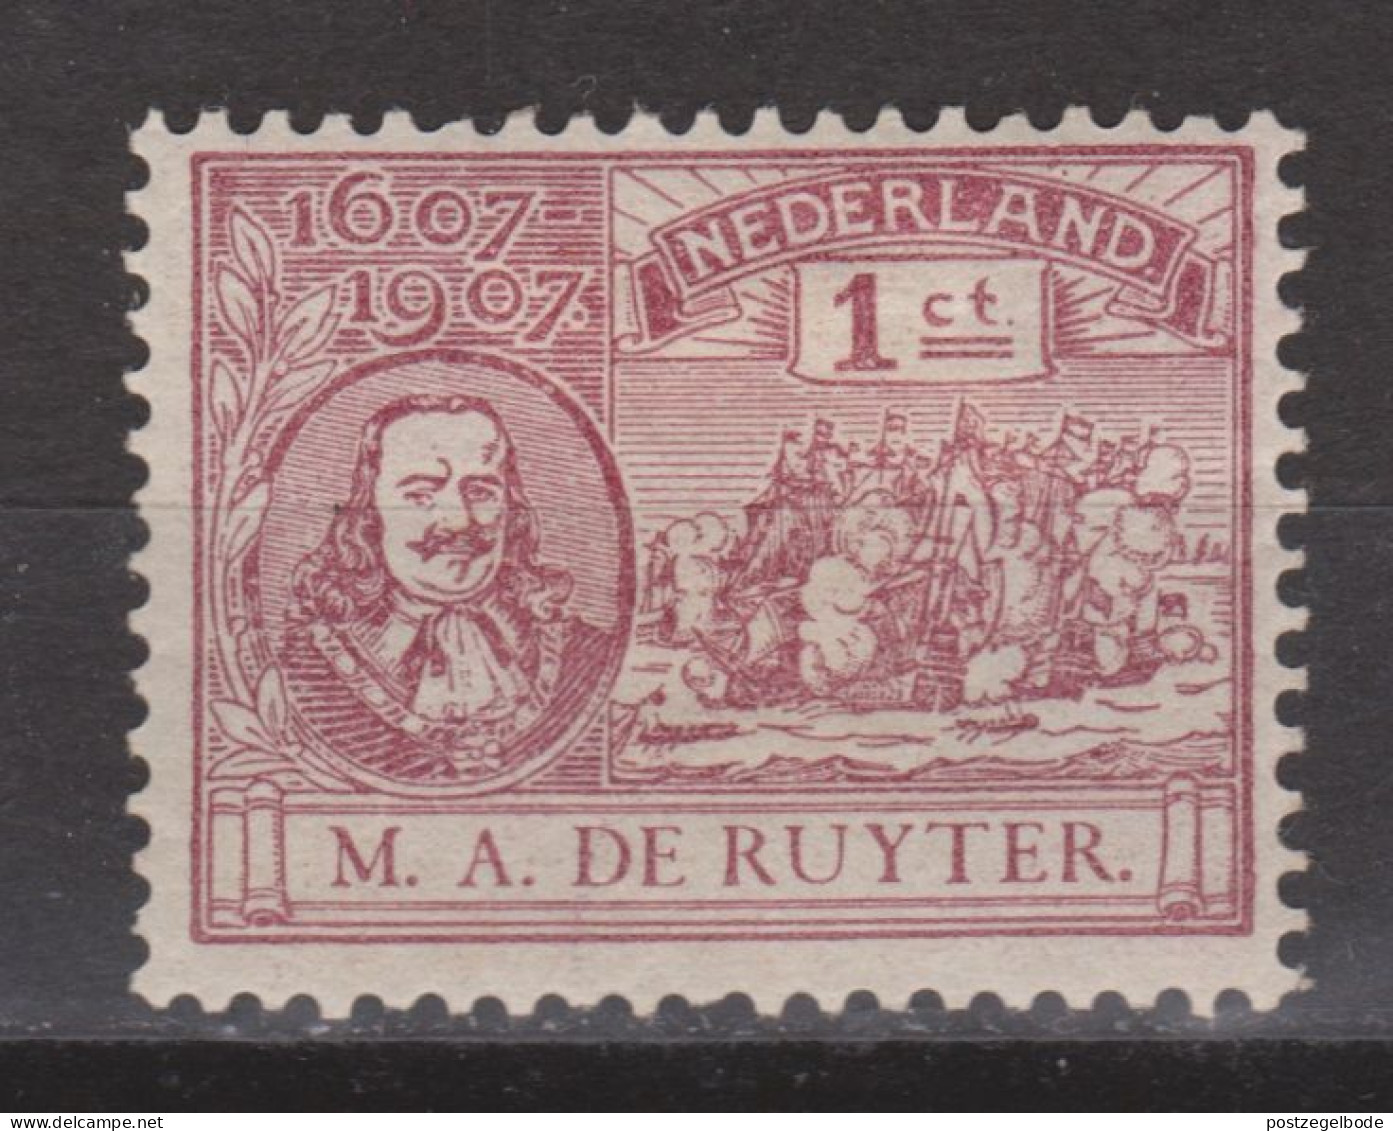 NVPH Nederland Netherlands Pays Bas Niederlande Holanda  88 MLH/ongebruikt Michiel De Ruyter 1907 - Nuovi